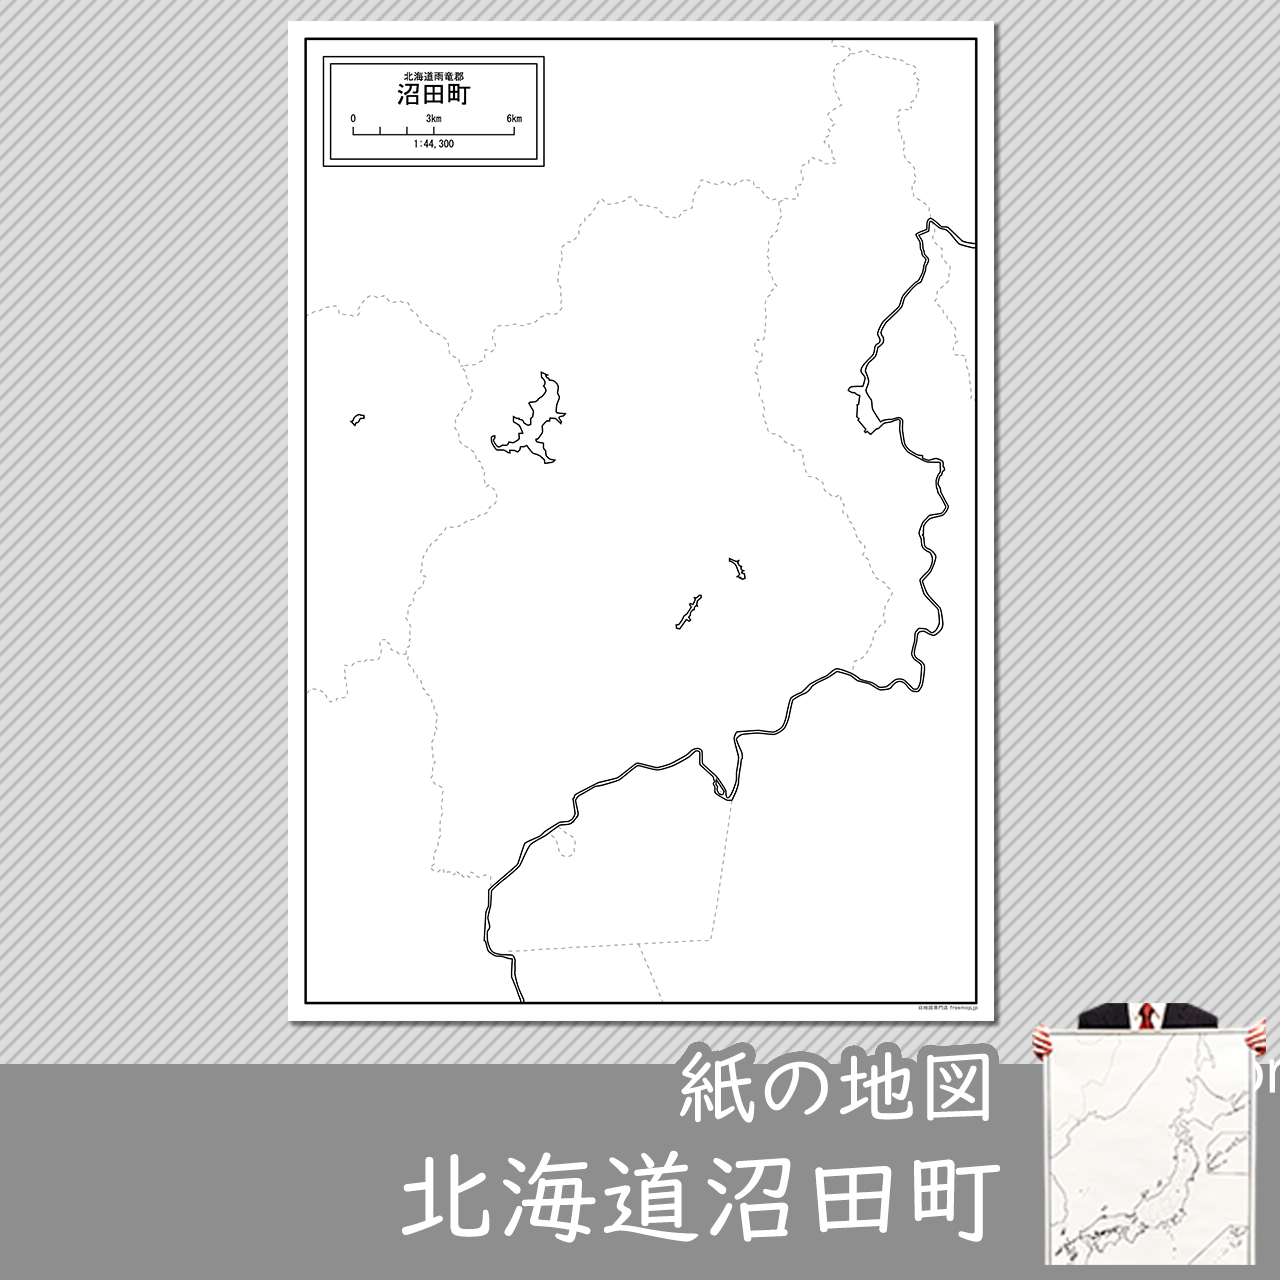 沼田町の紙の白地図のサムネイル